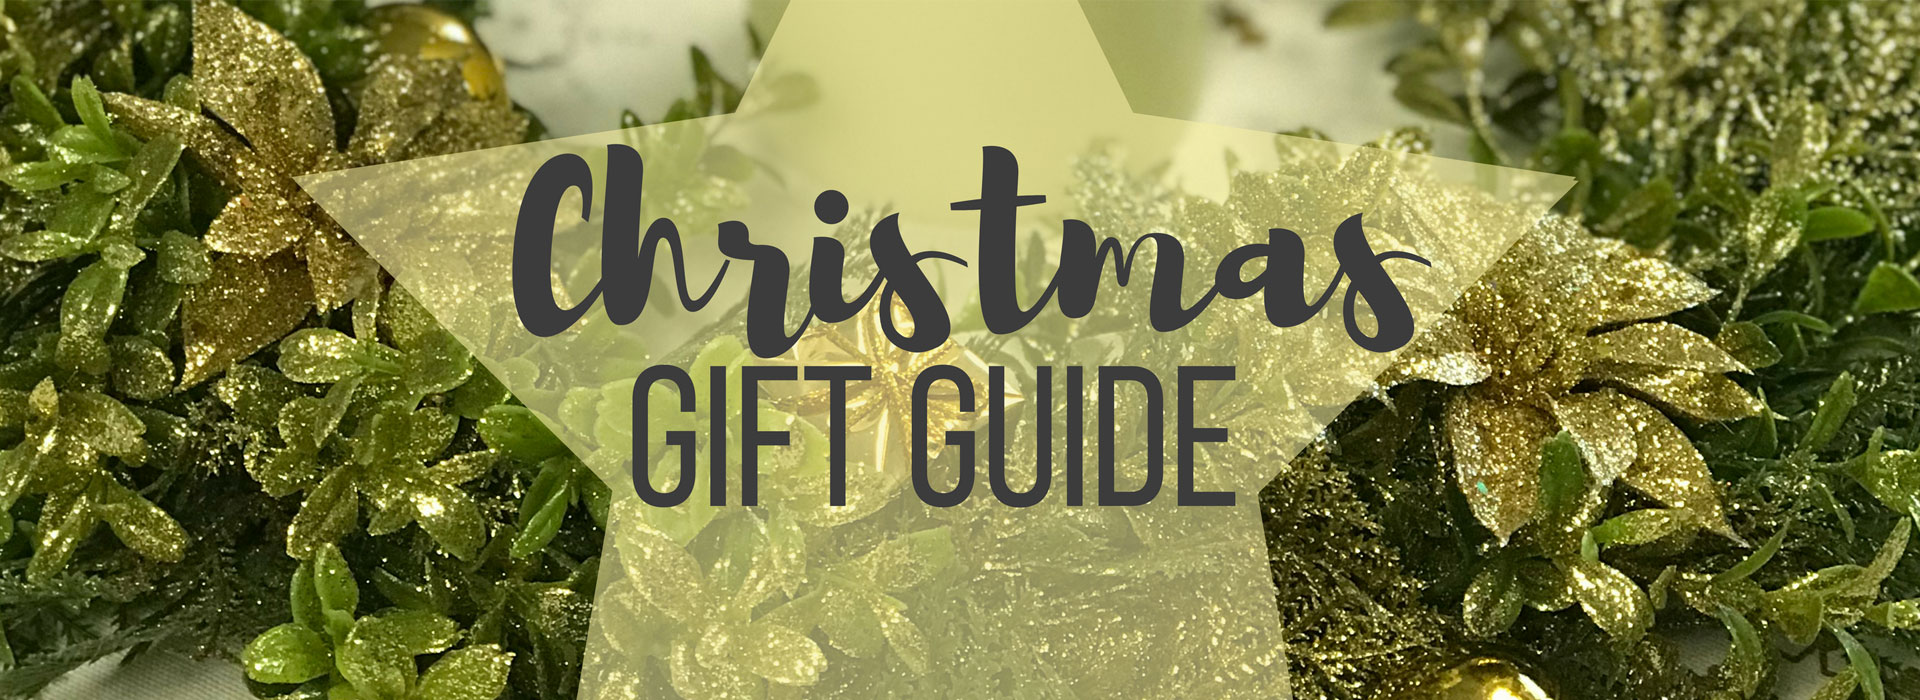 Christmas gift guide